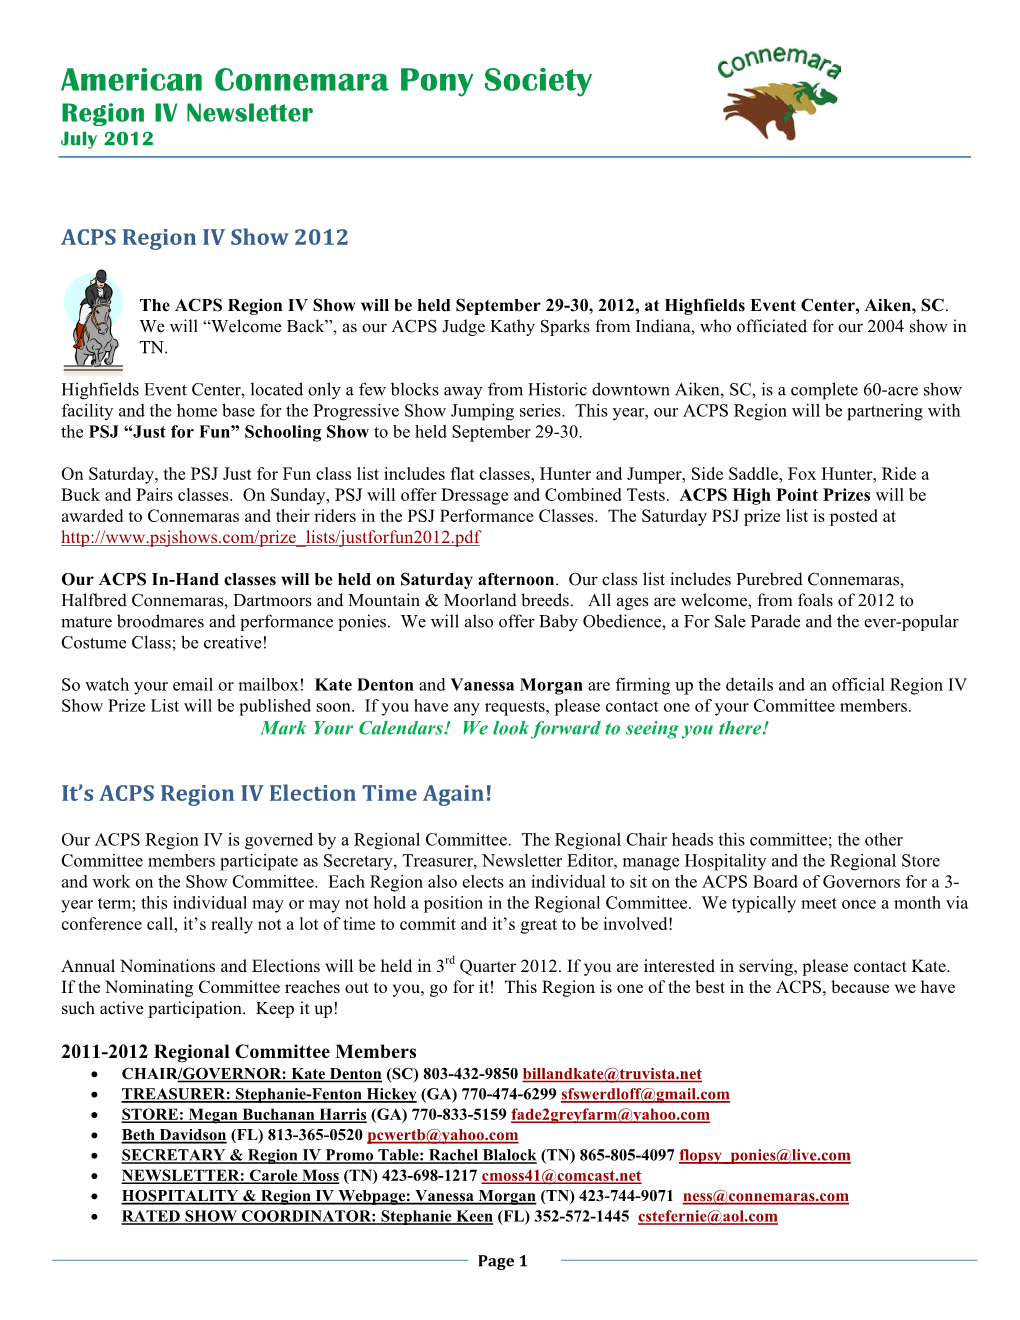 American Connemara Pony Society Region IV Newsletter July 2012